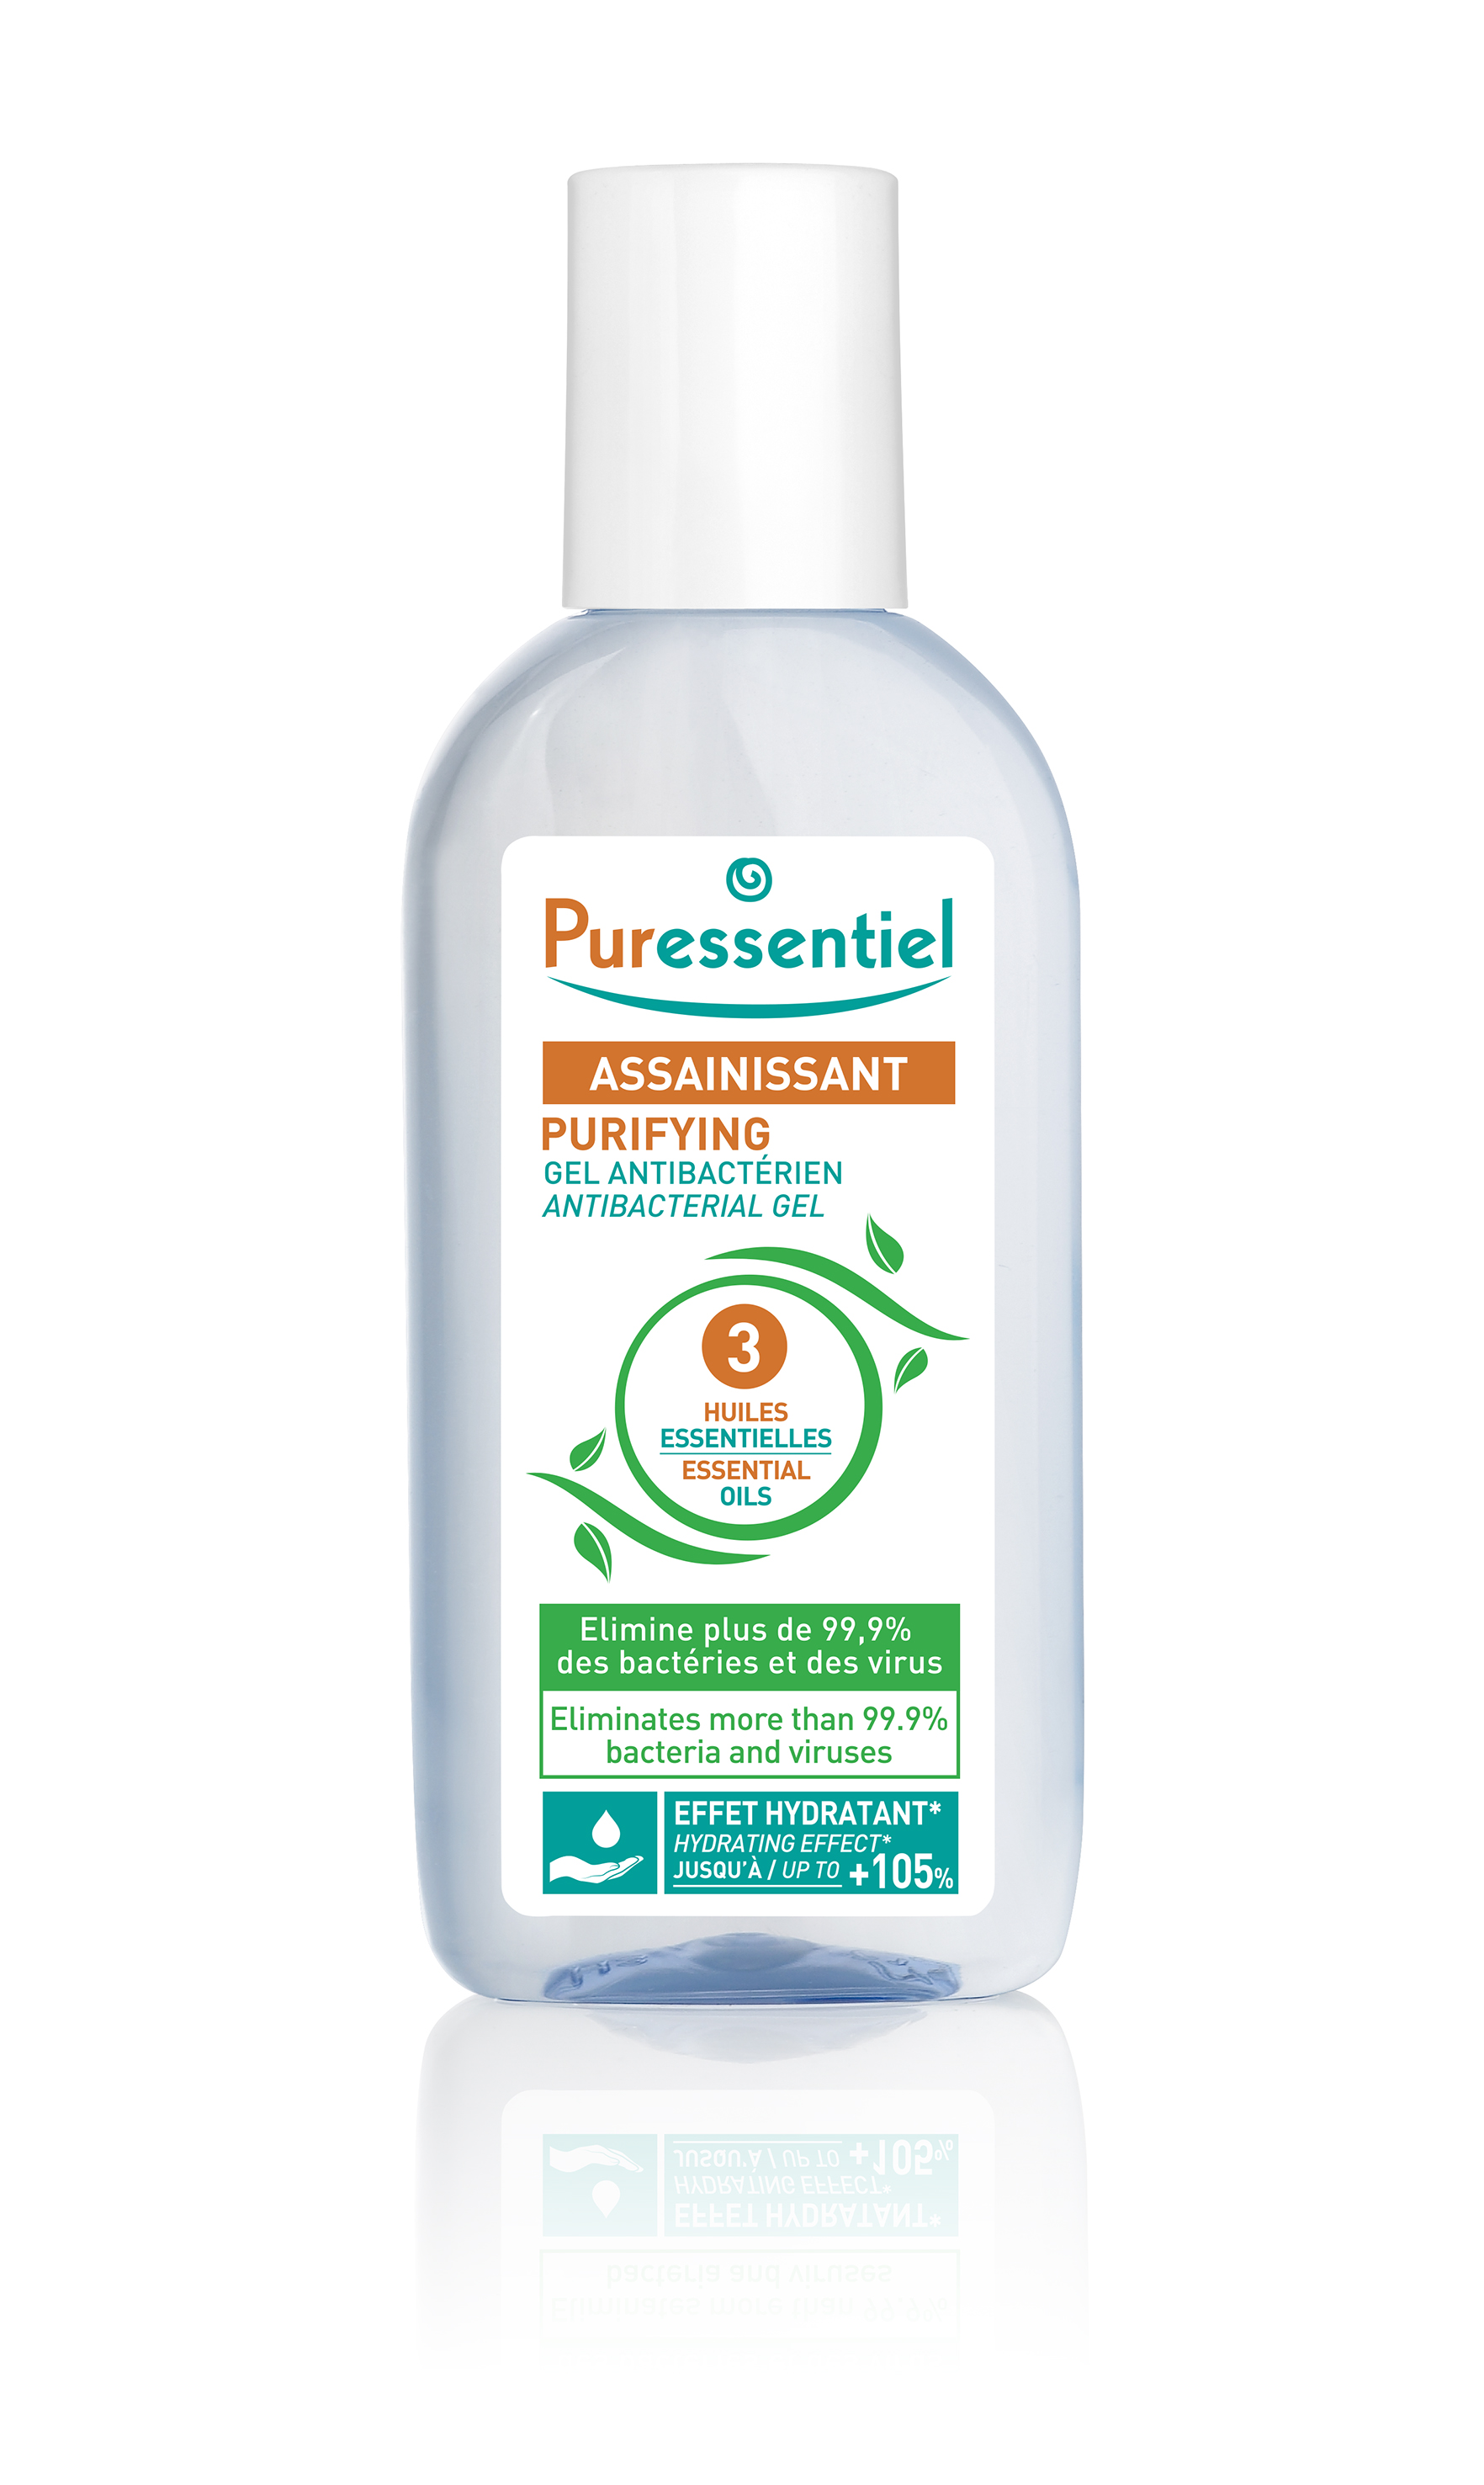 Puressentiel Антибактериальный гель 3 эфирных масла, 80 мл